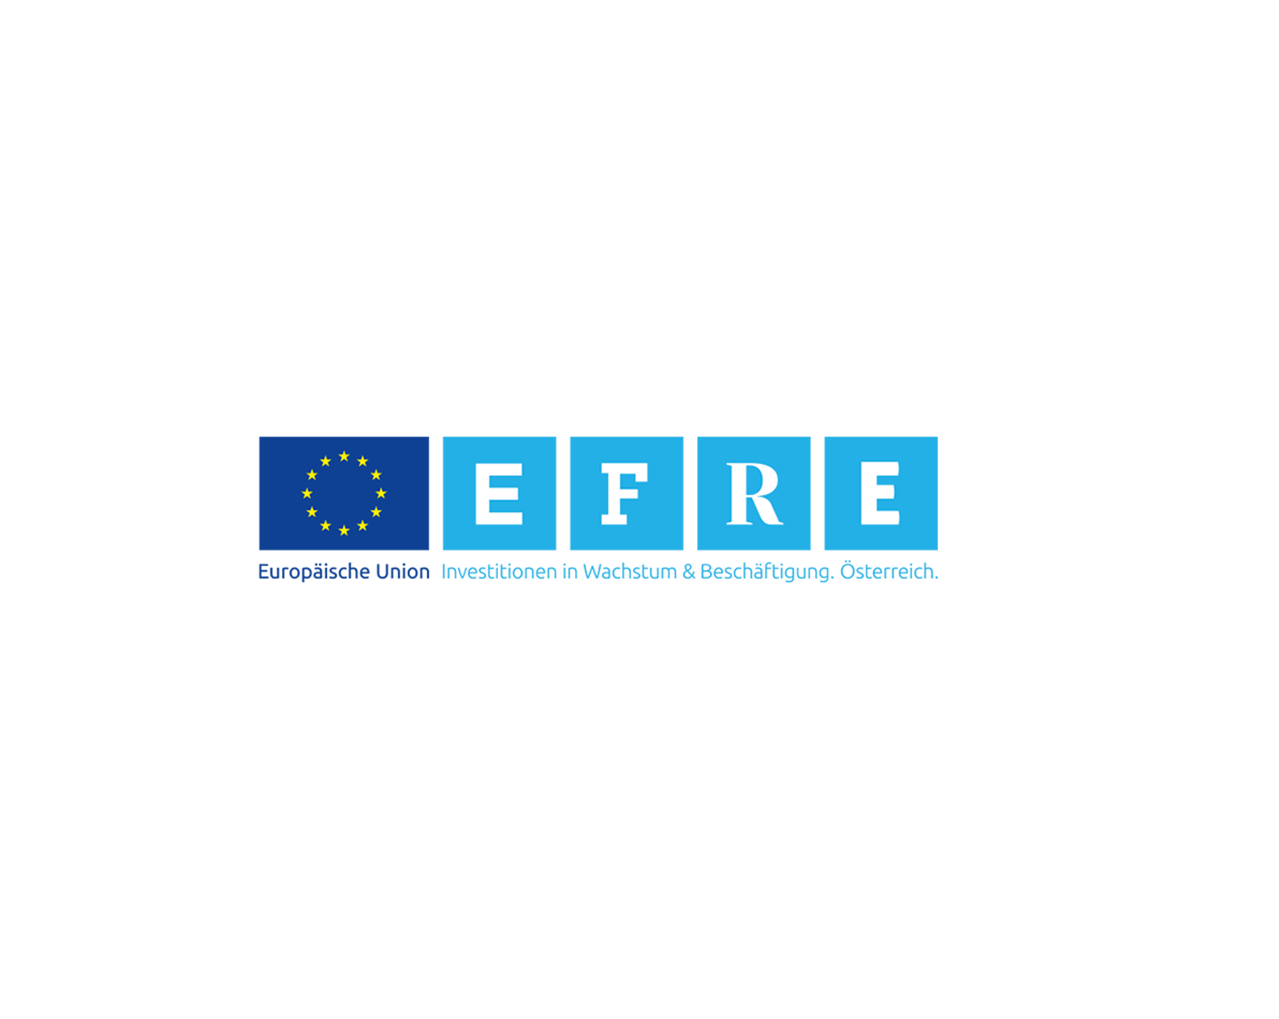 EFRE-Logo